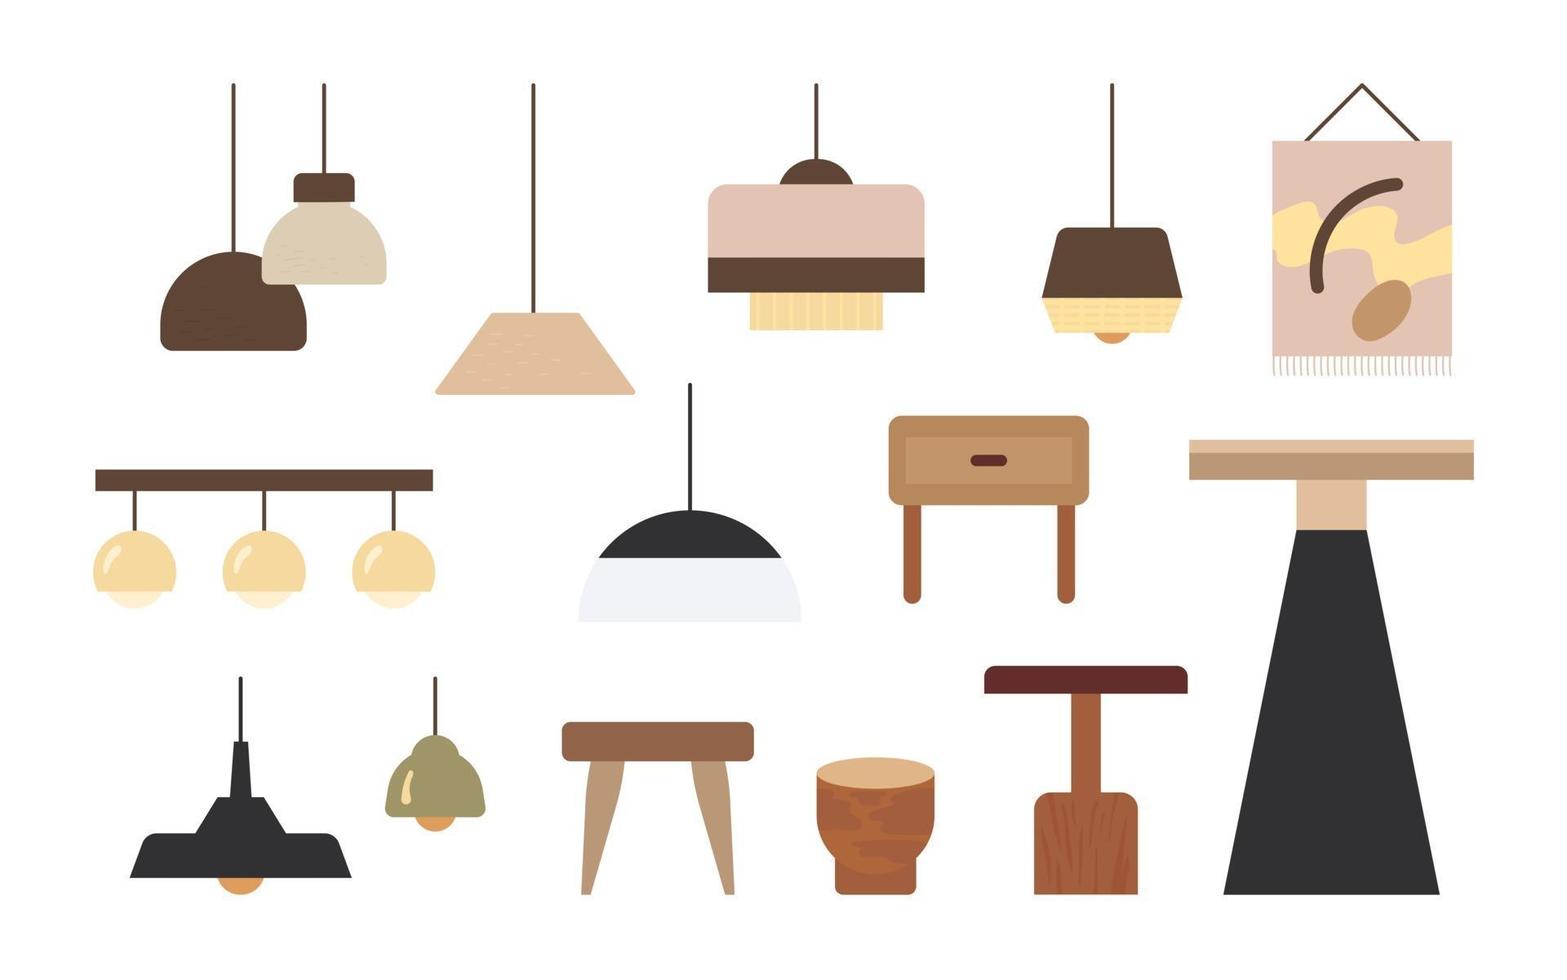 divers styles de lampes et de tables pour l'intérieur. illustration vectorielle minimale de style design plat. vecteur